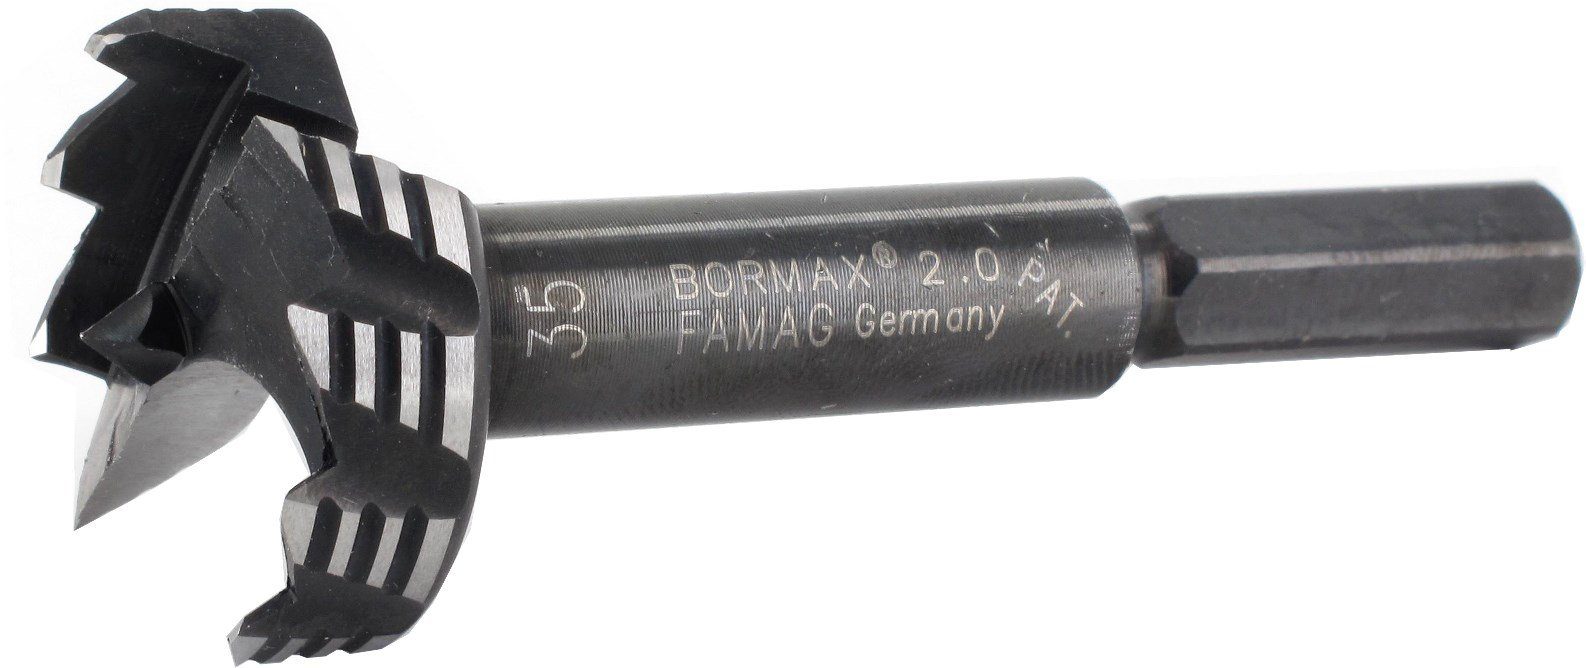 FAMAG 1/8" 2 FAMAG WS-Forstnerbohrer 2.0 Holzbohrer Bormax